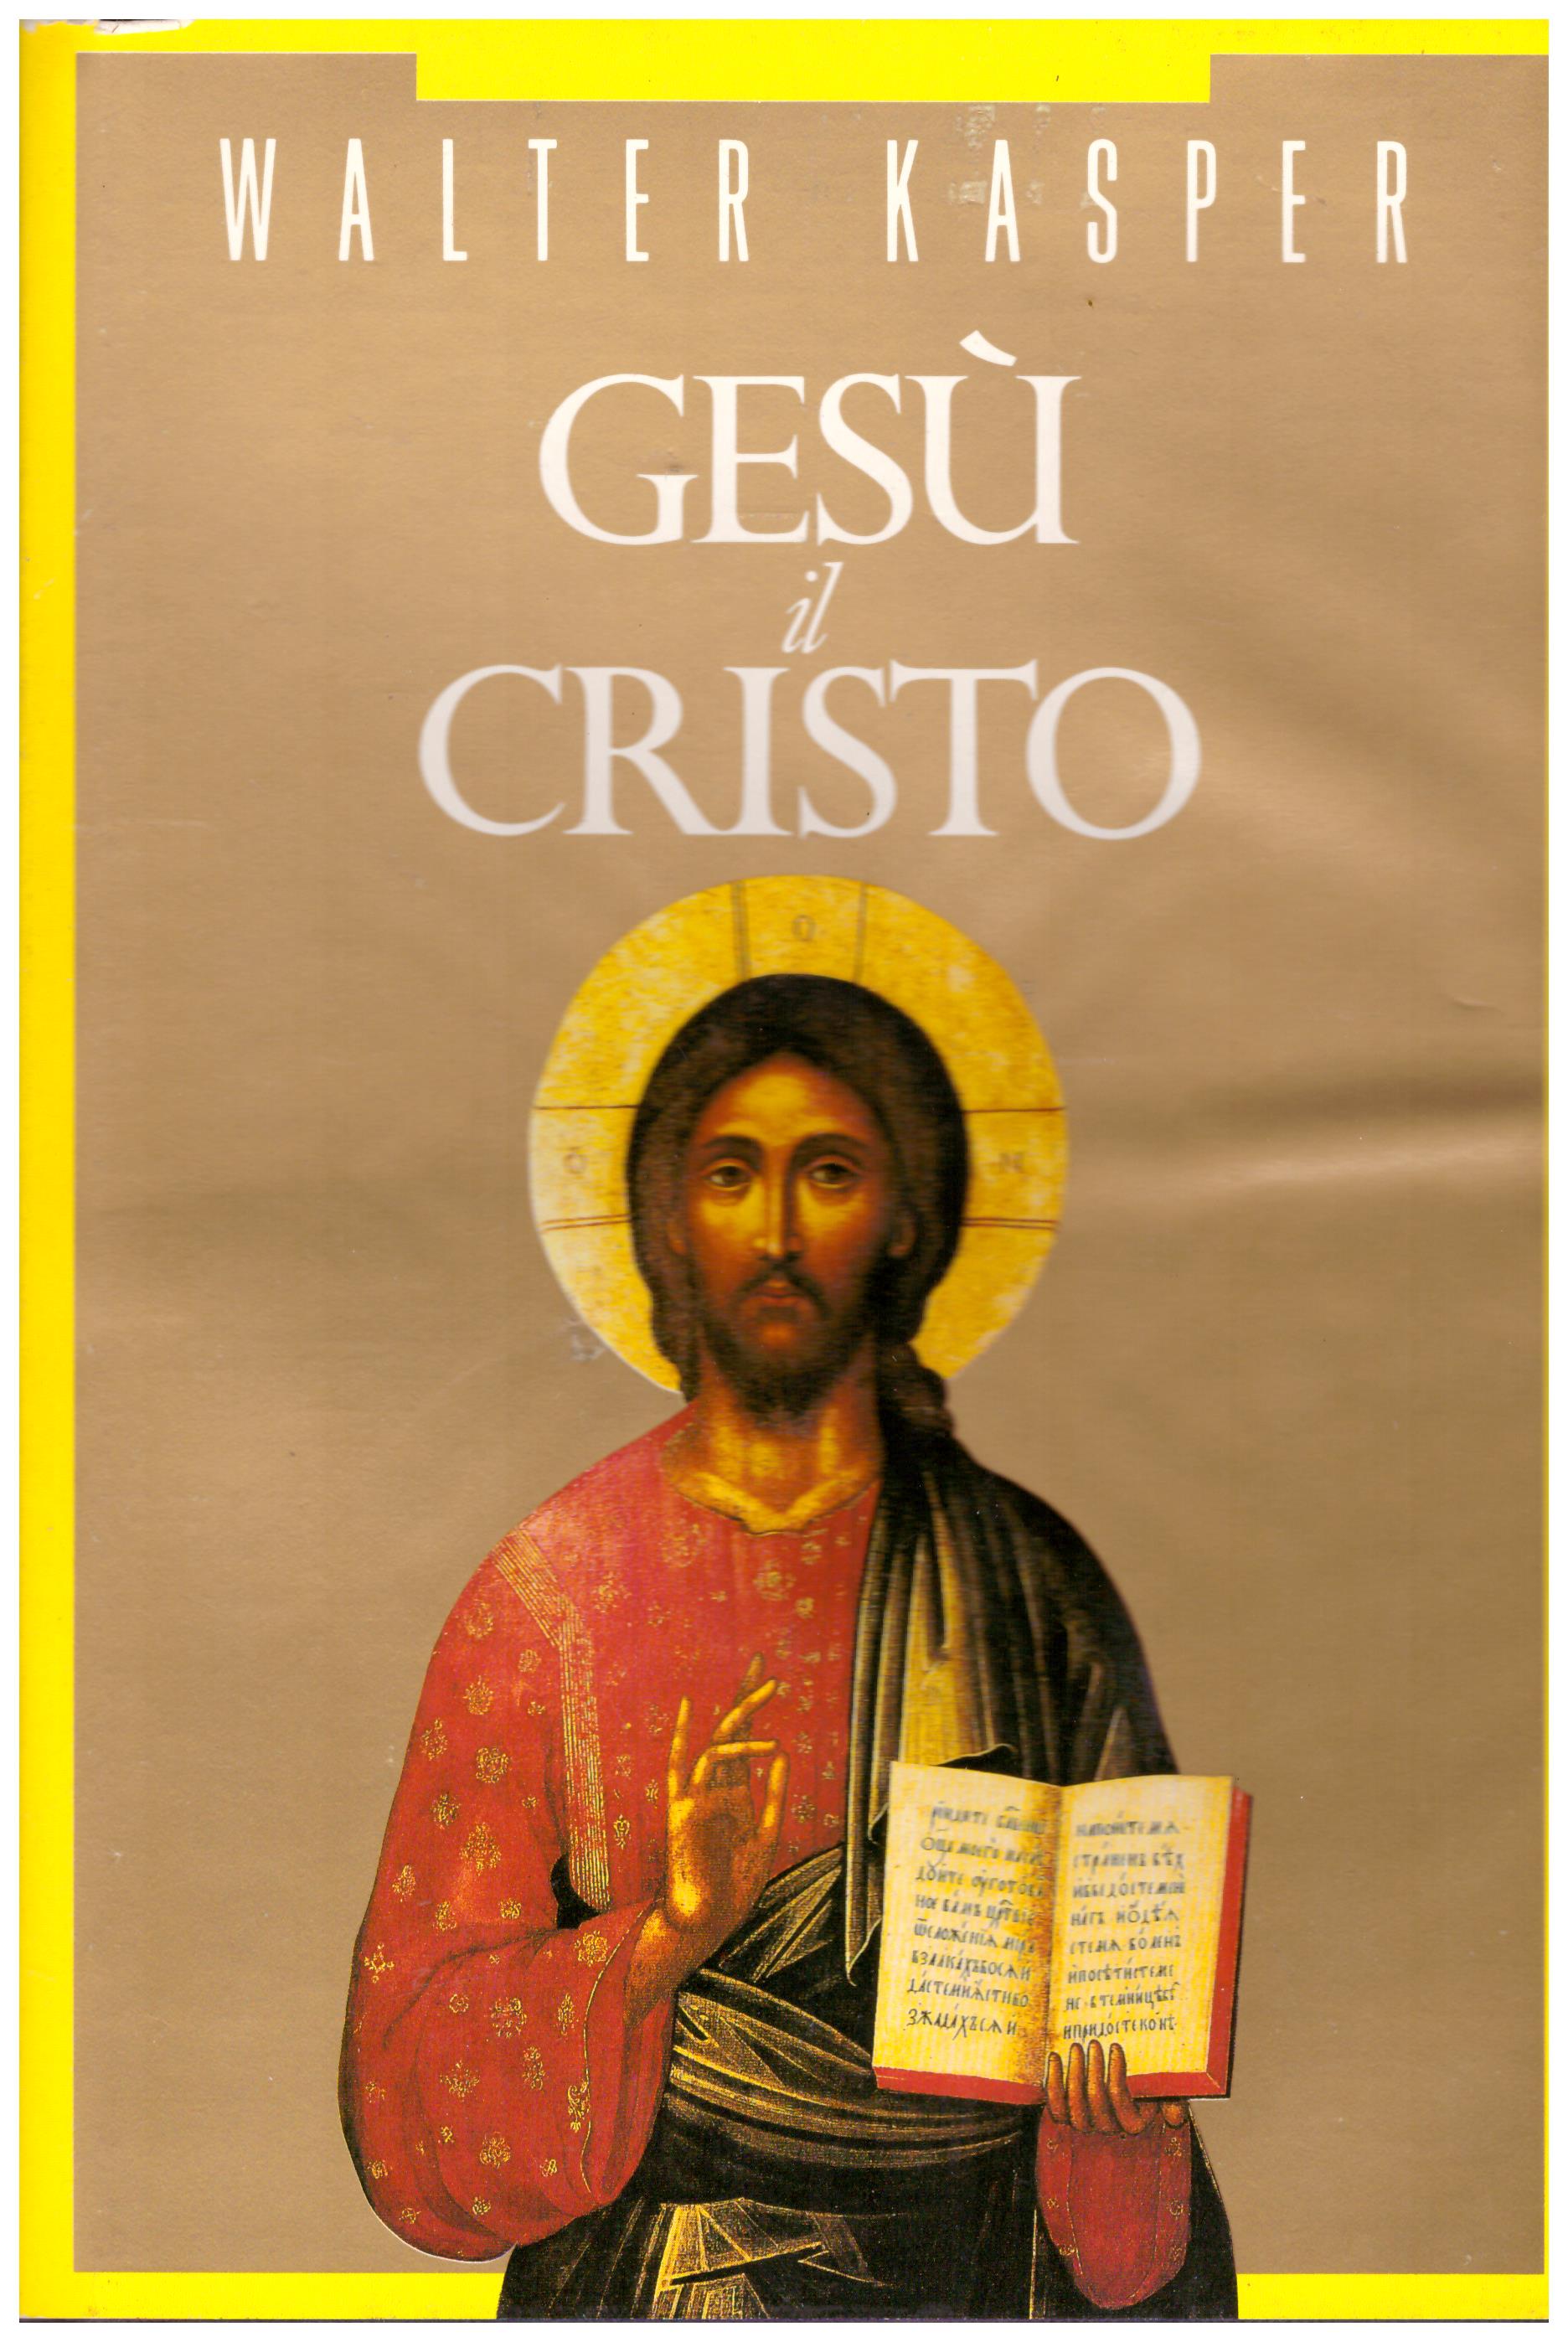 Titolo: Gesù il Cristo Autore: Walter Kasper  Editore: fratelli Stianti 1991